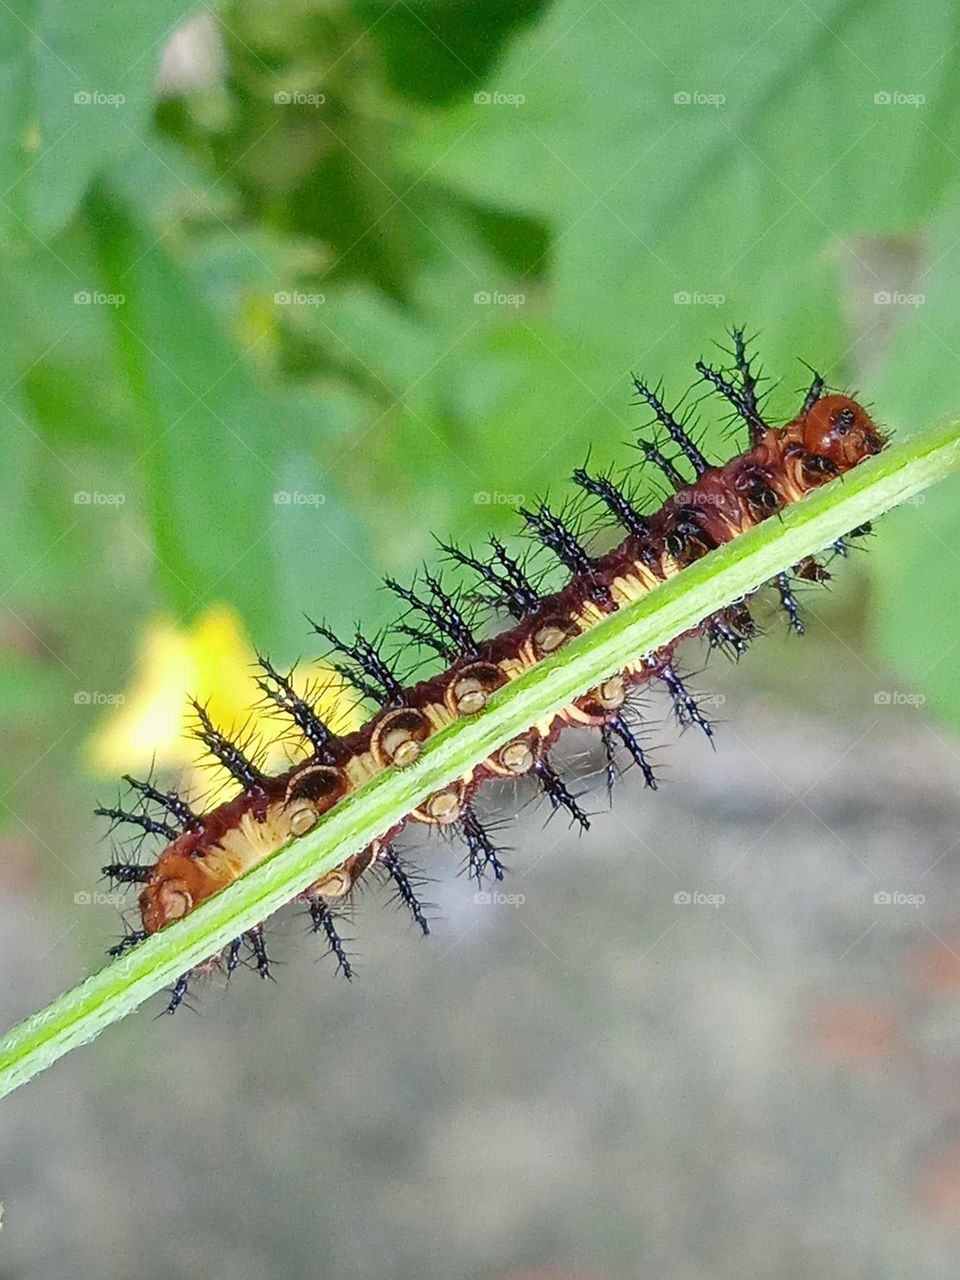 A hiding caterpillar...